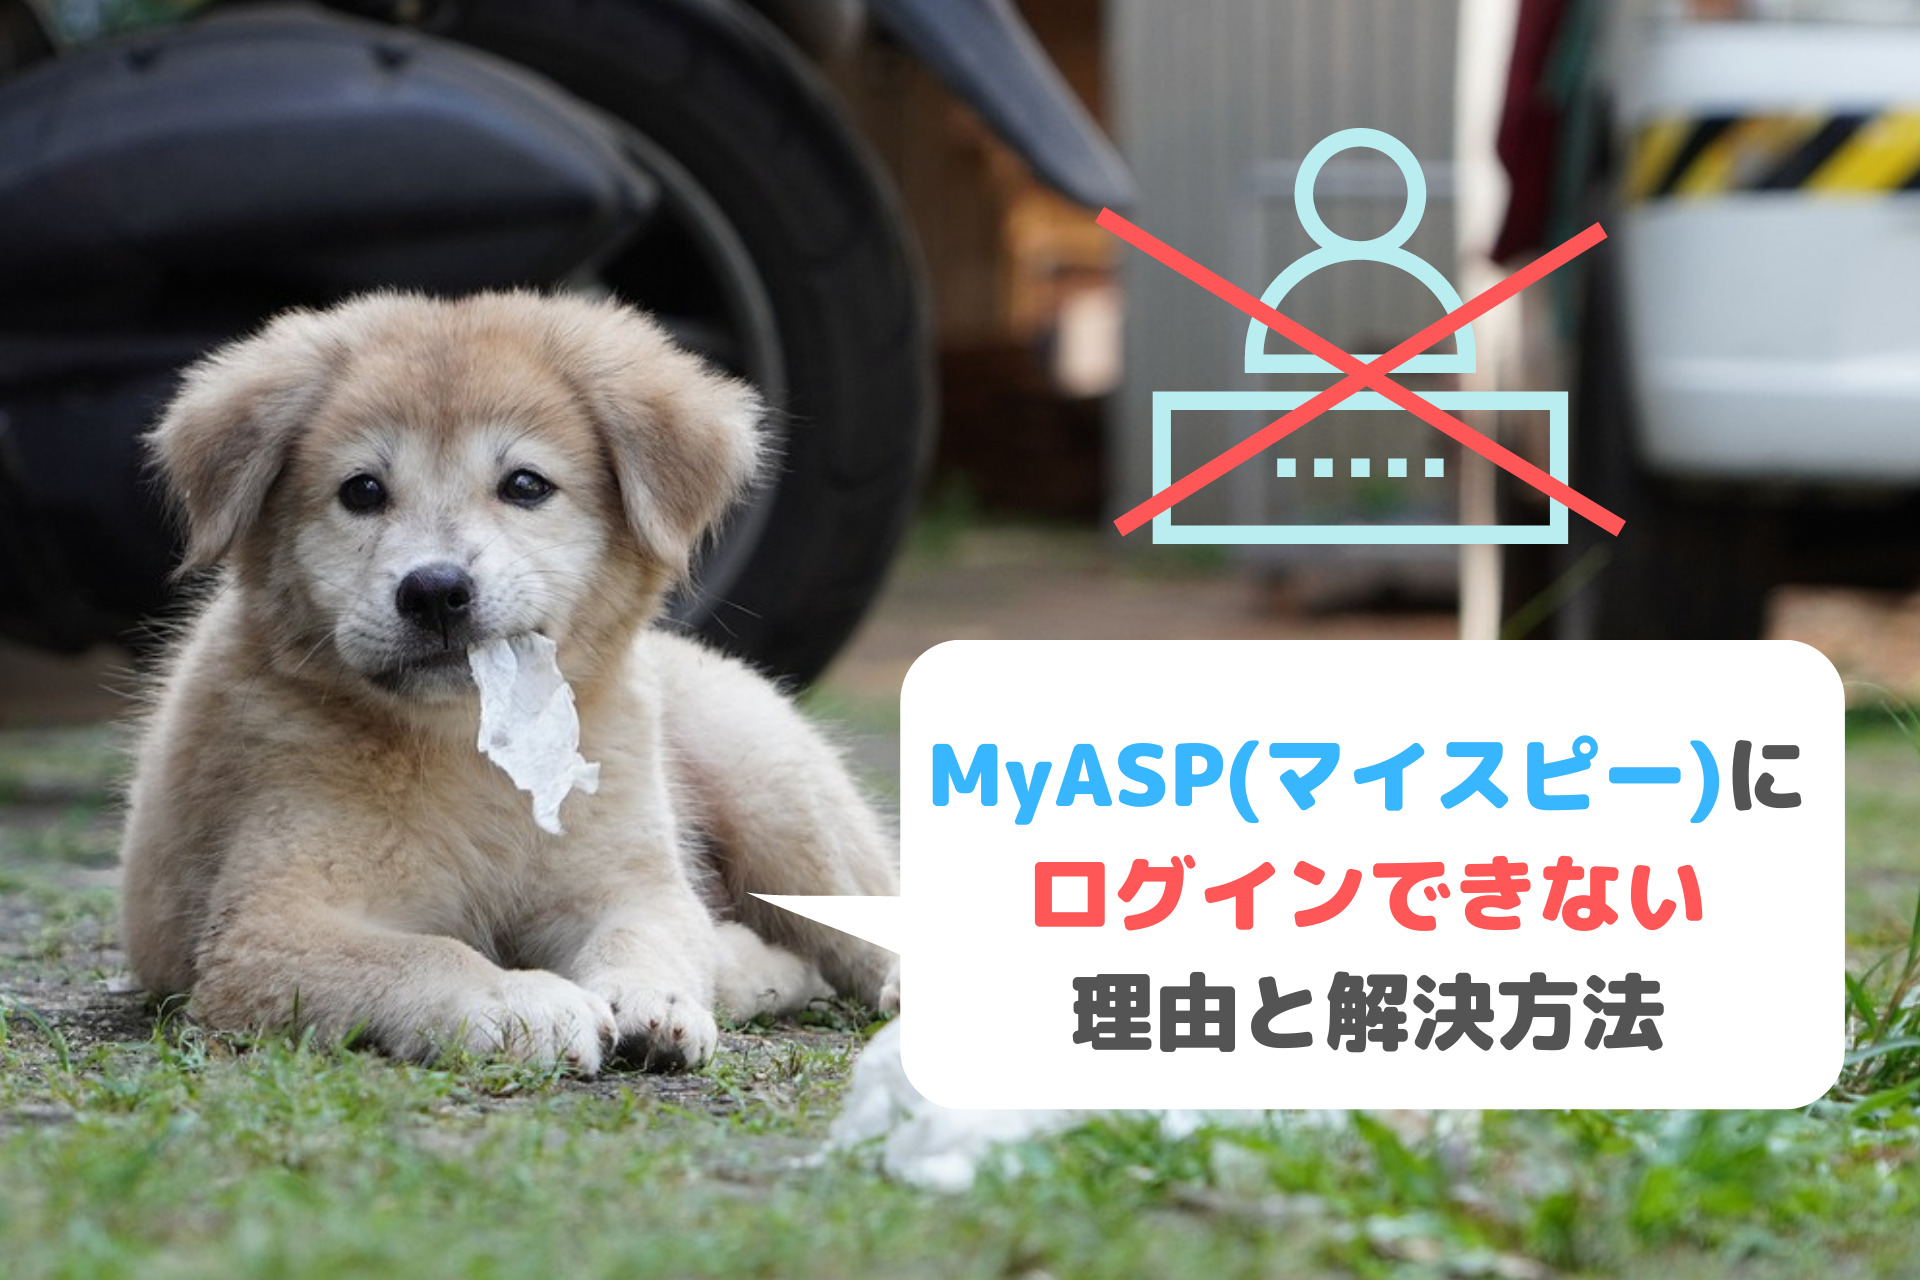 MyASP(マイスピー)にログインできない理由と解決方法をわかりやすく解説